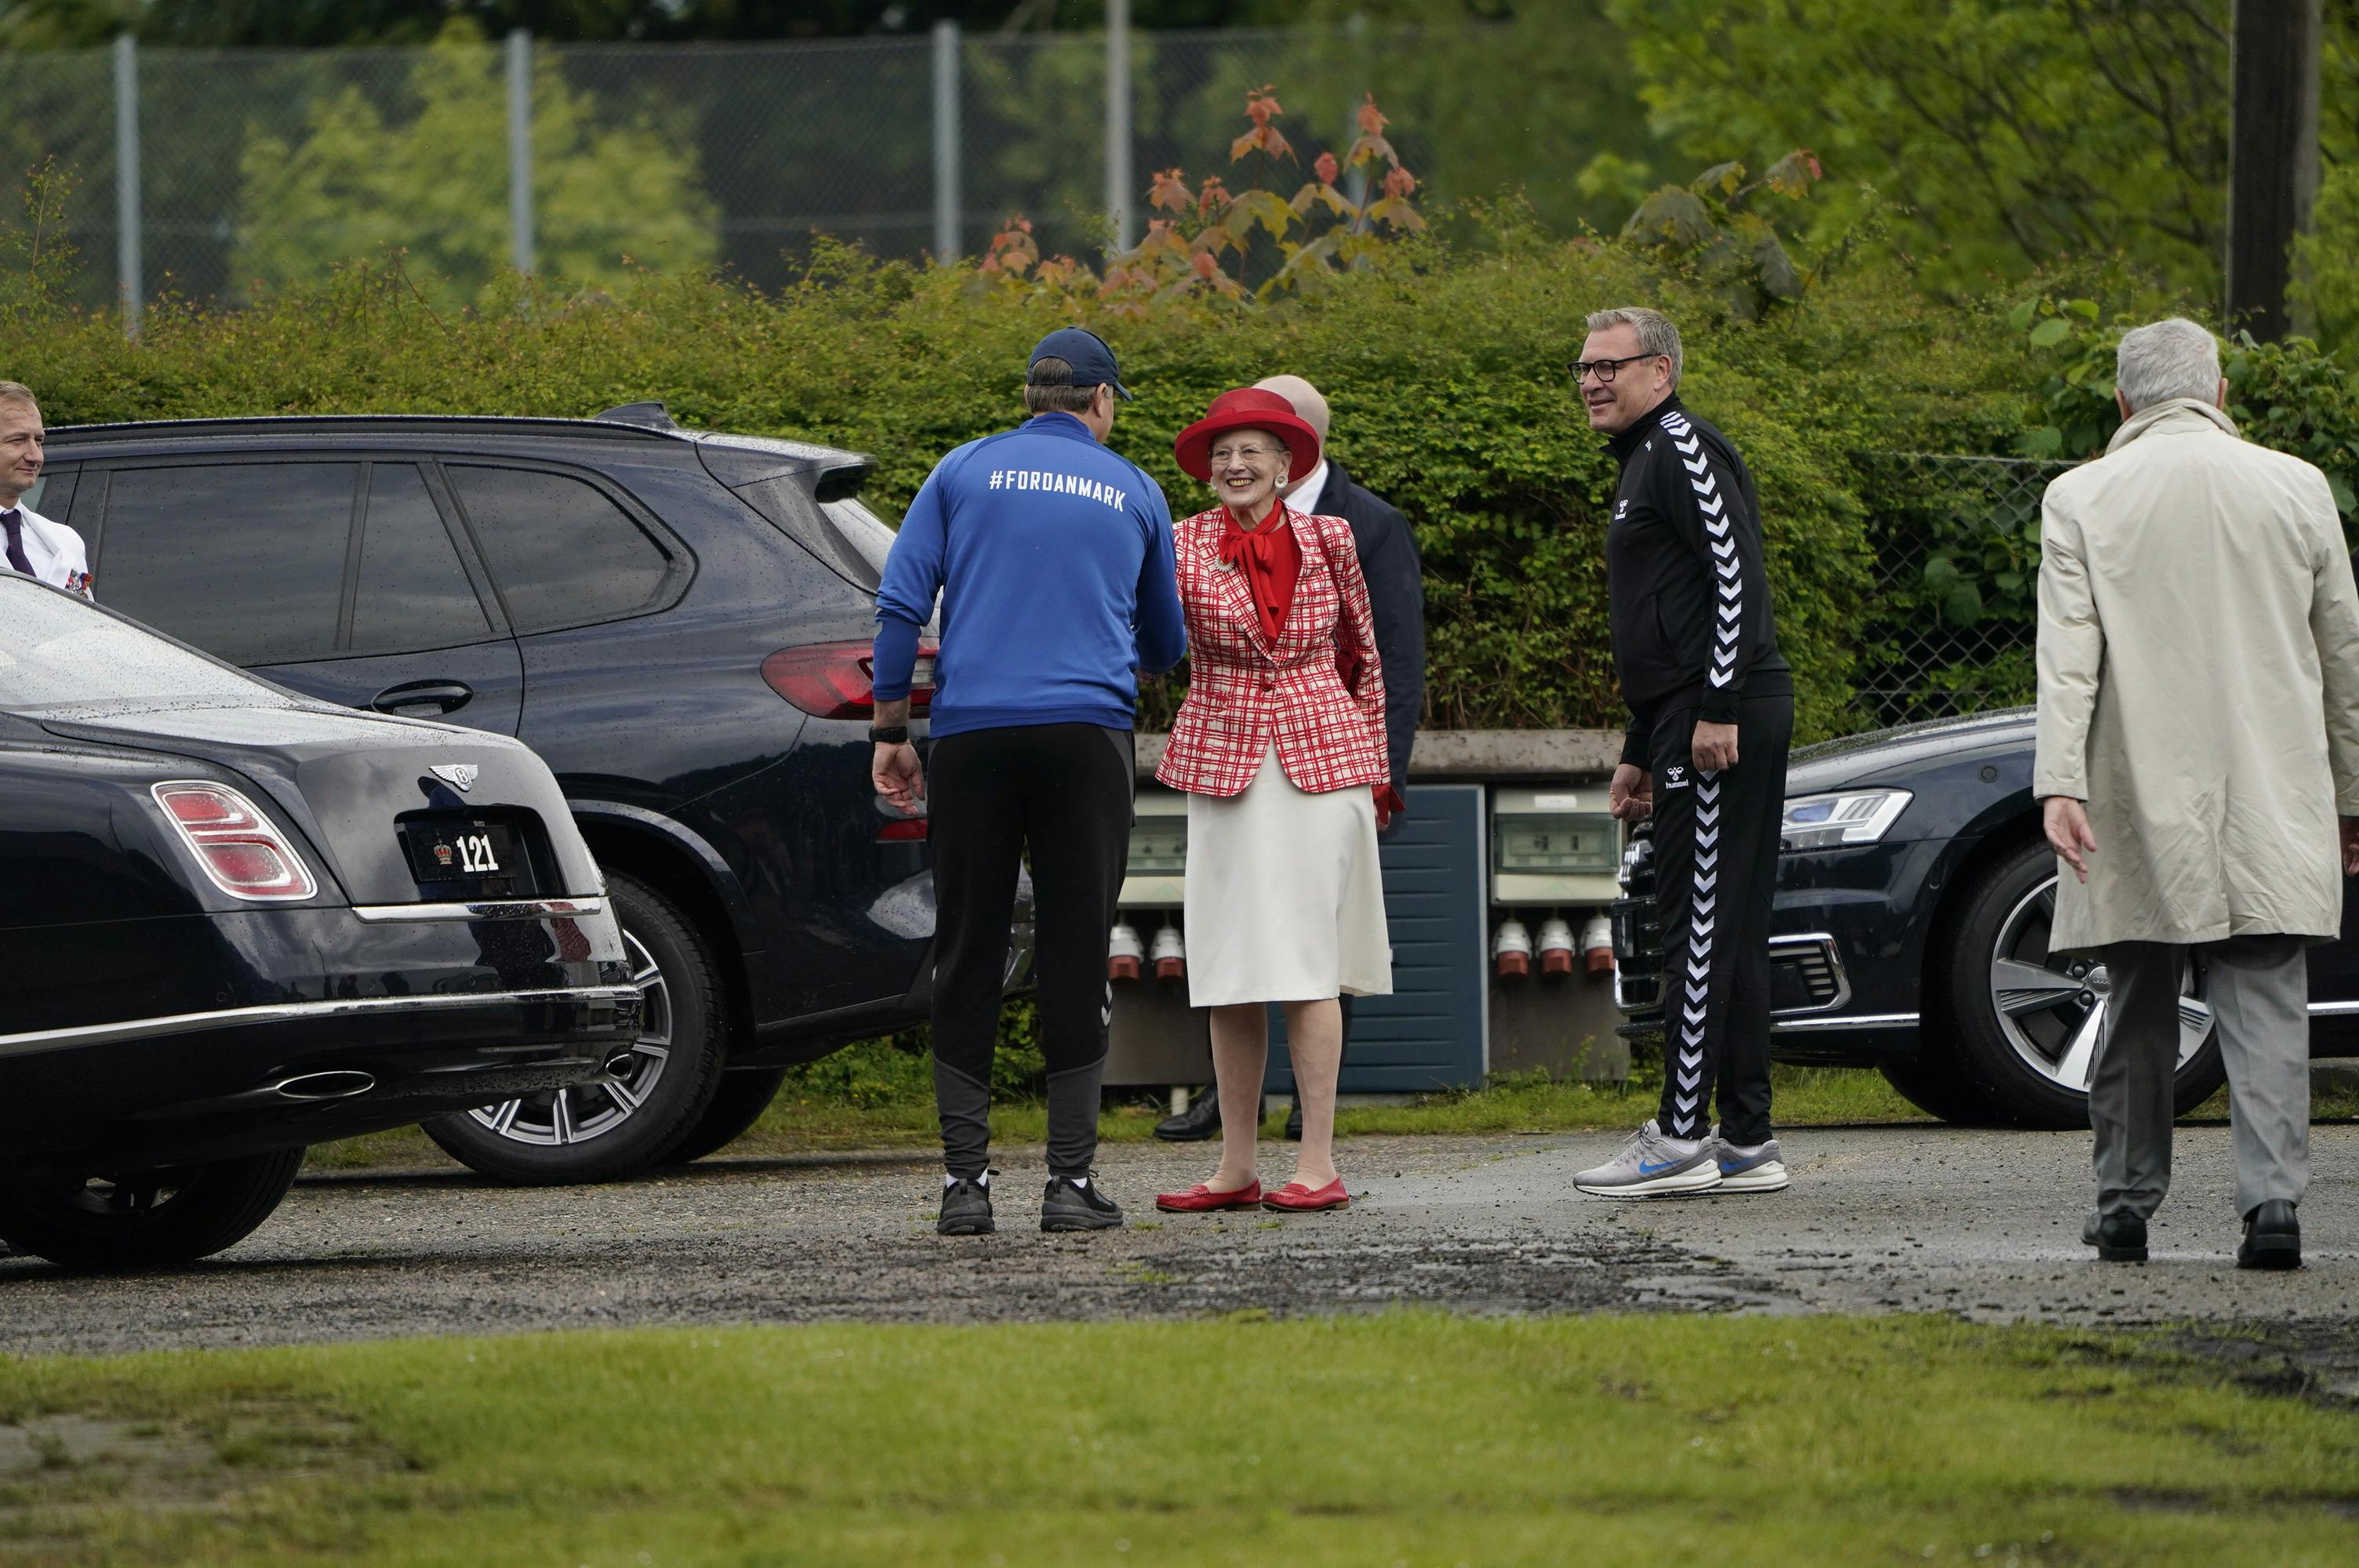 Landsholdet fik fint besøg af dronningen